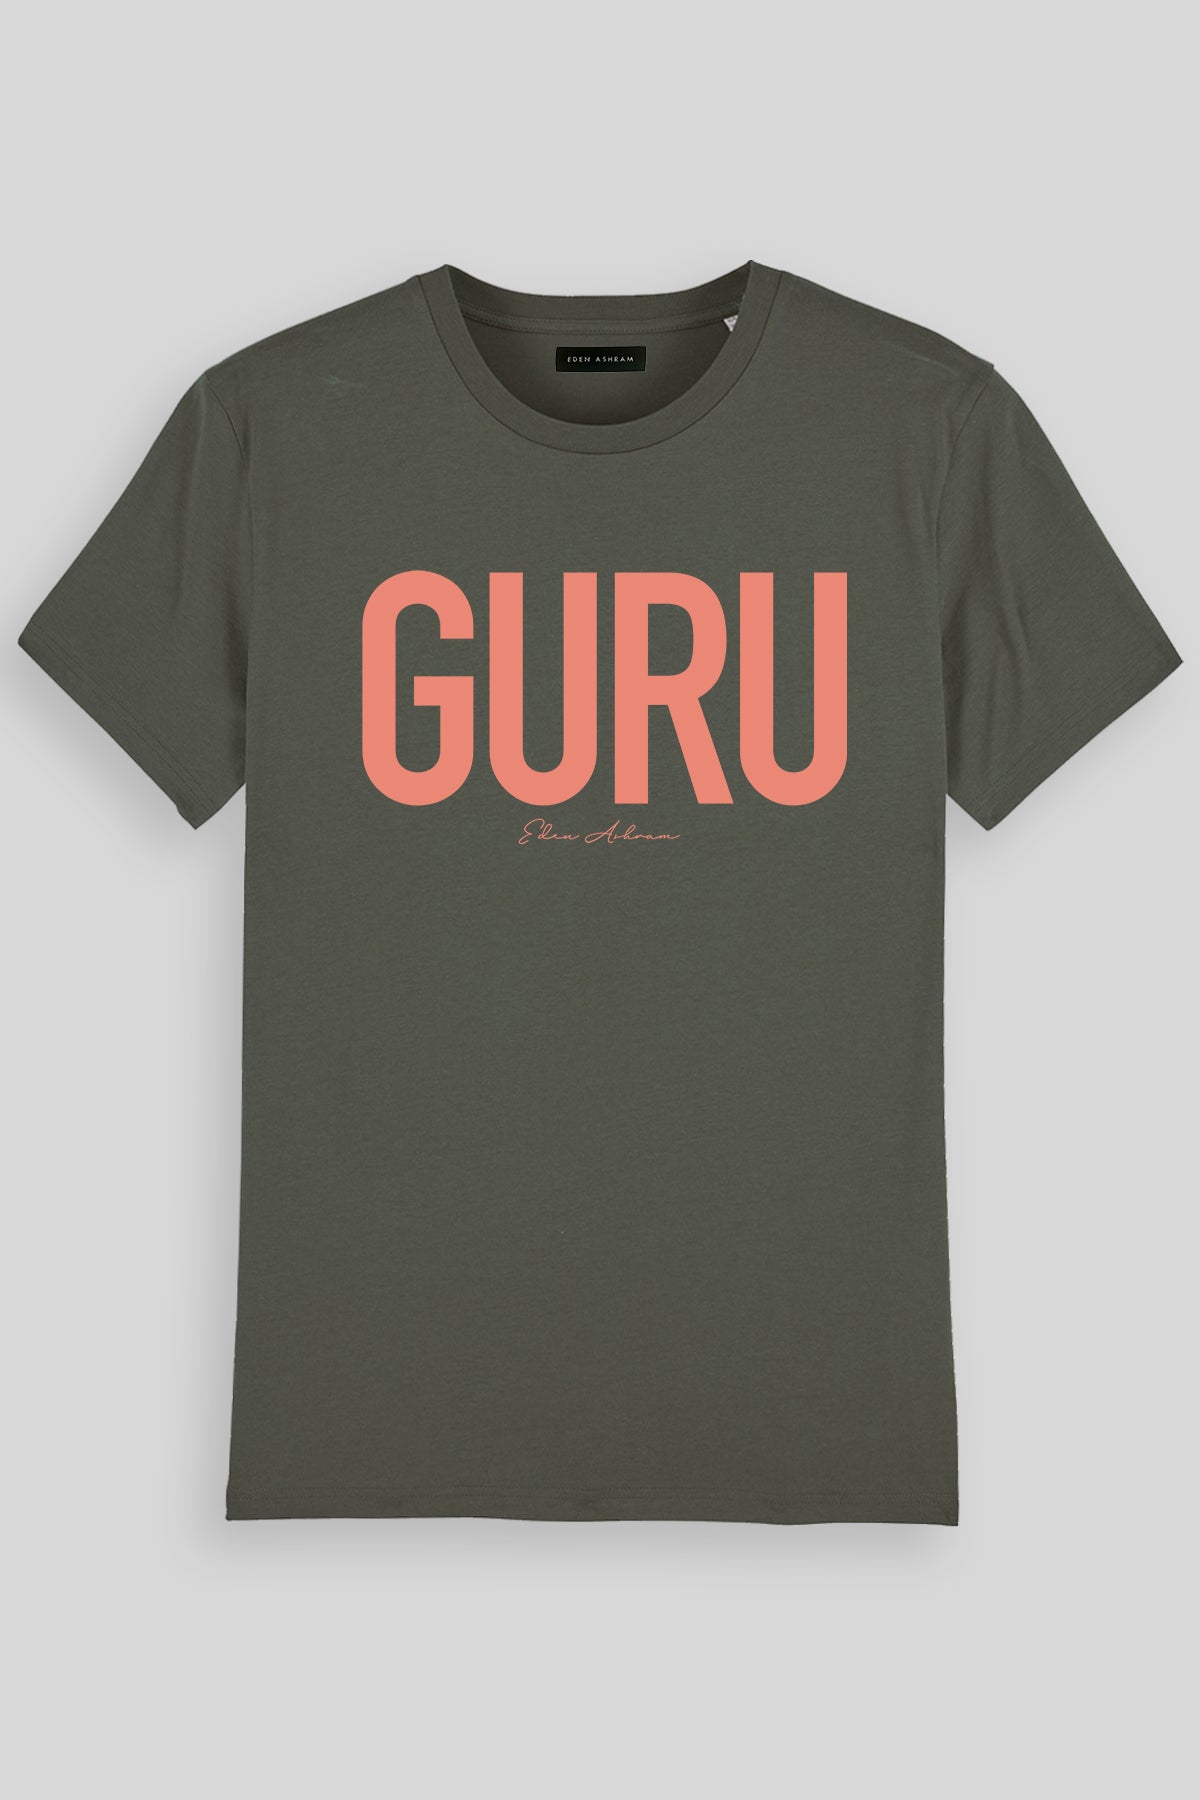 EDEN ASHRAM Guru Premium Classic T-Shirt Khaki